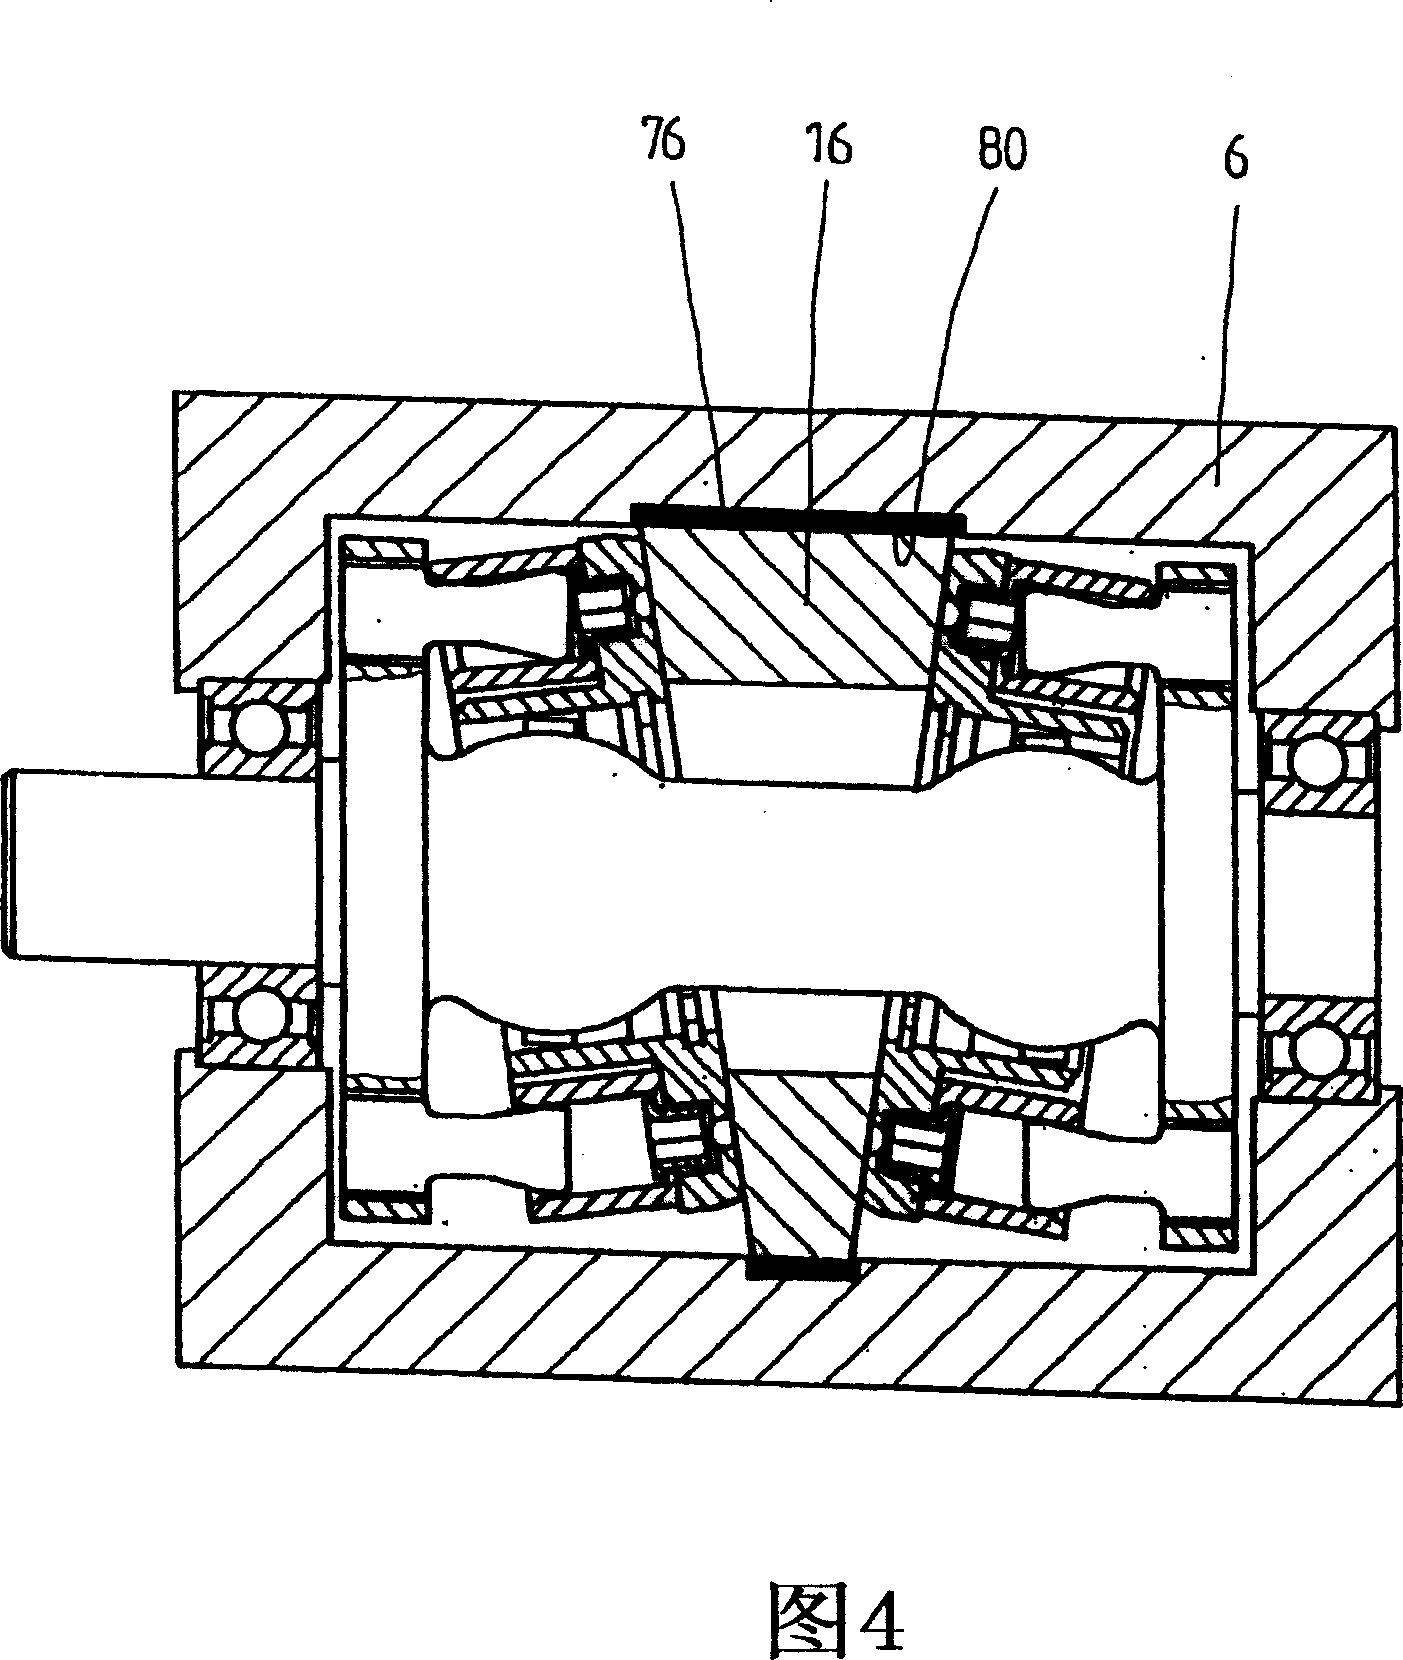 Axial piston machine